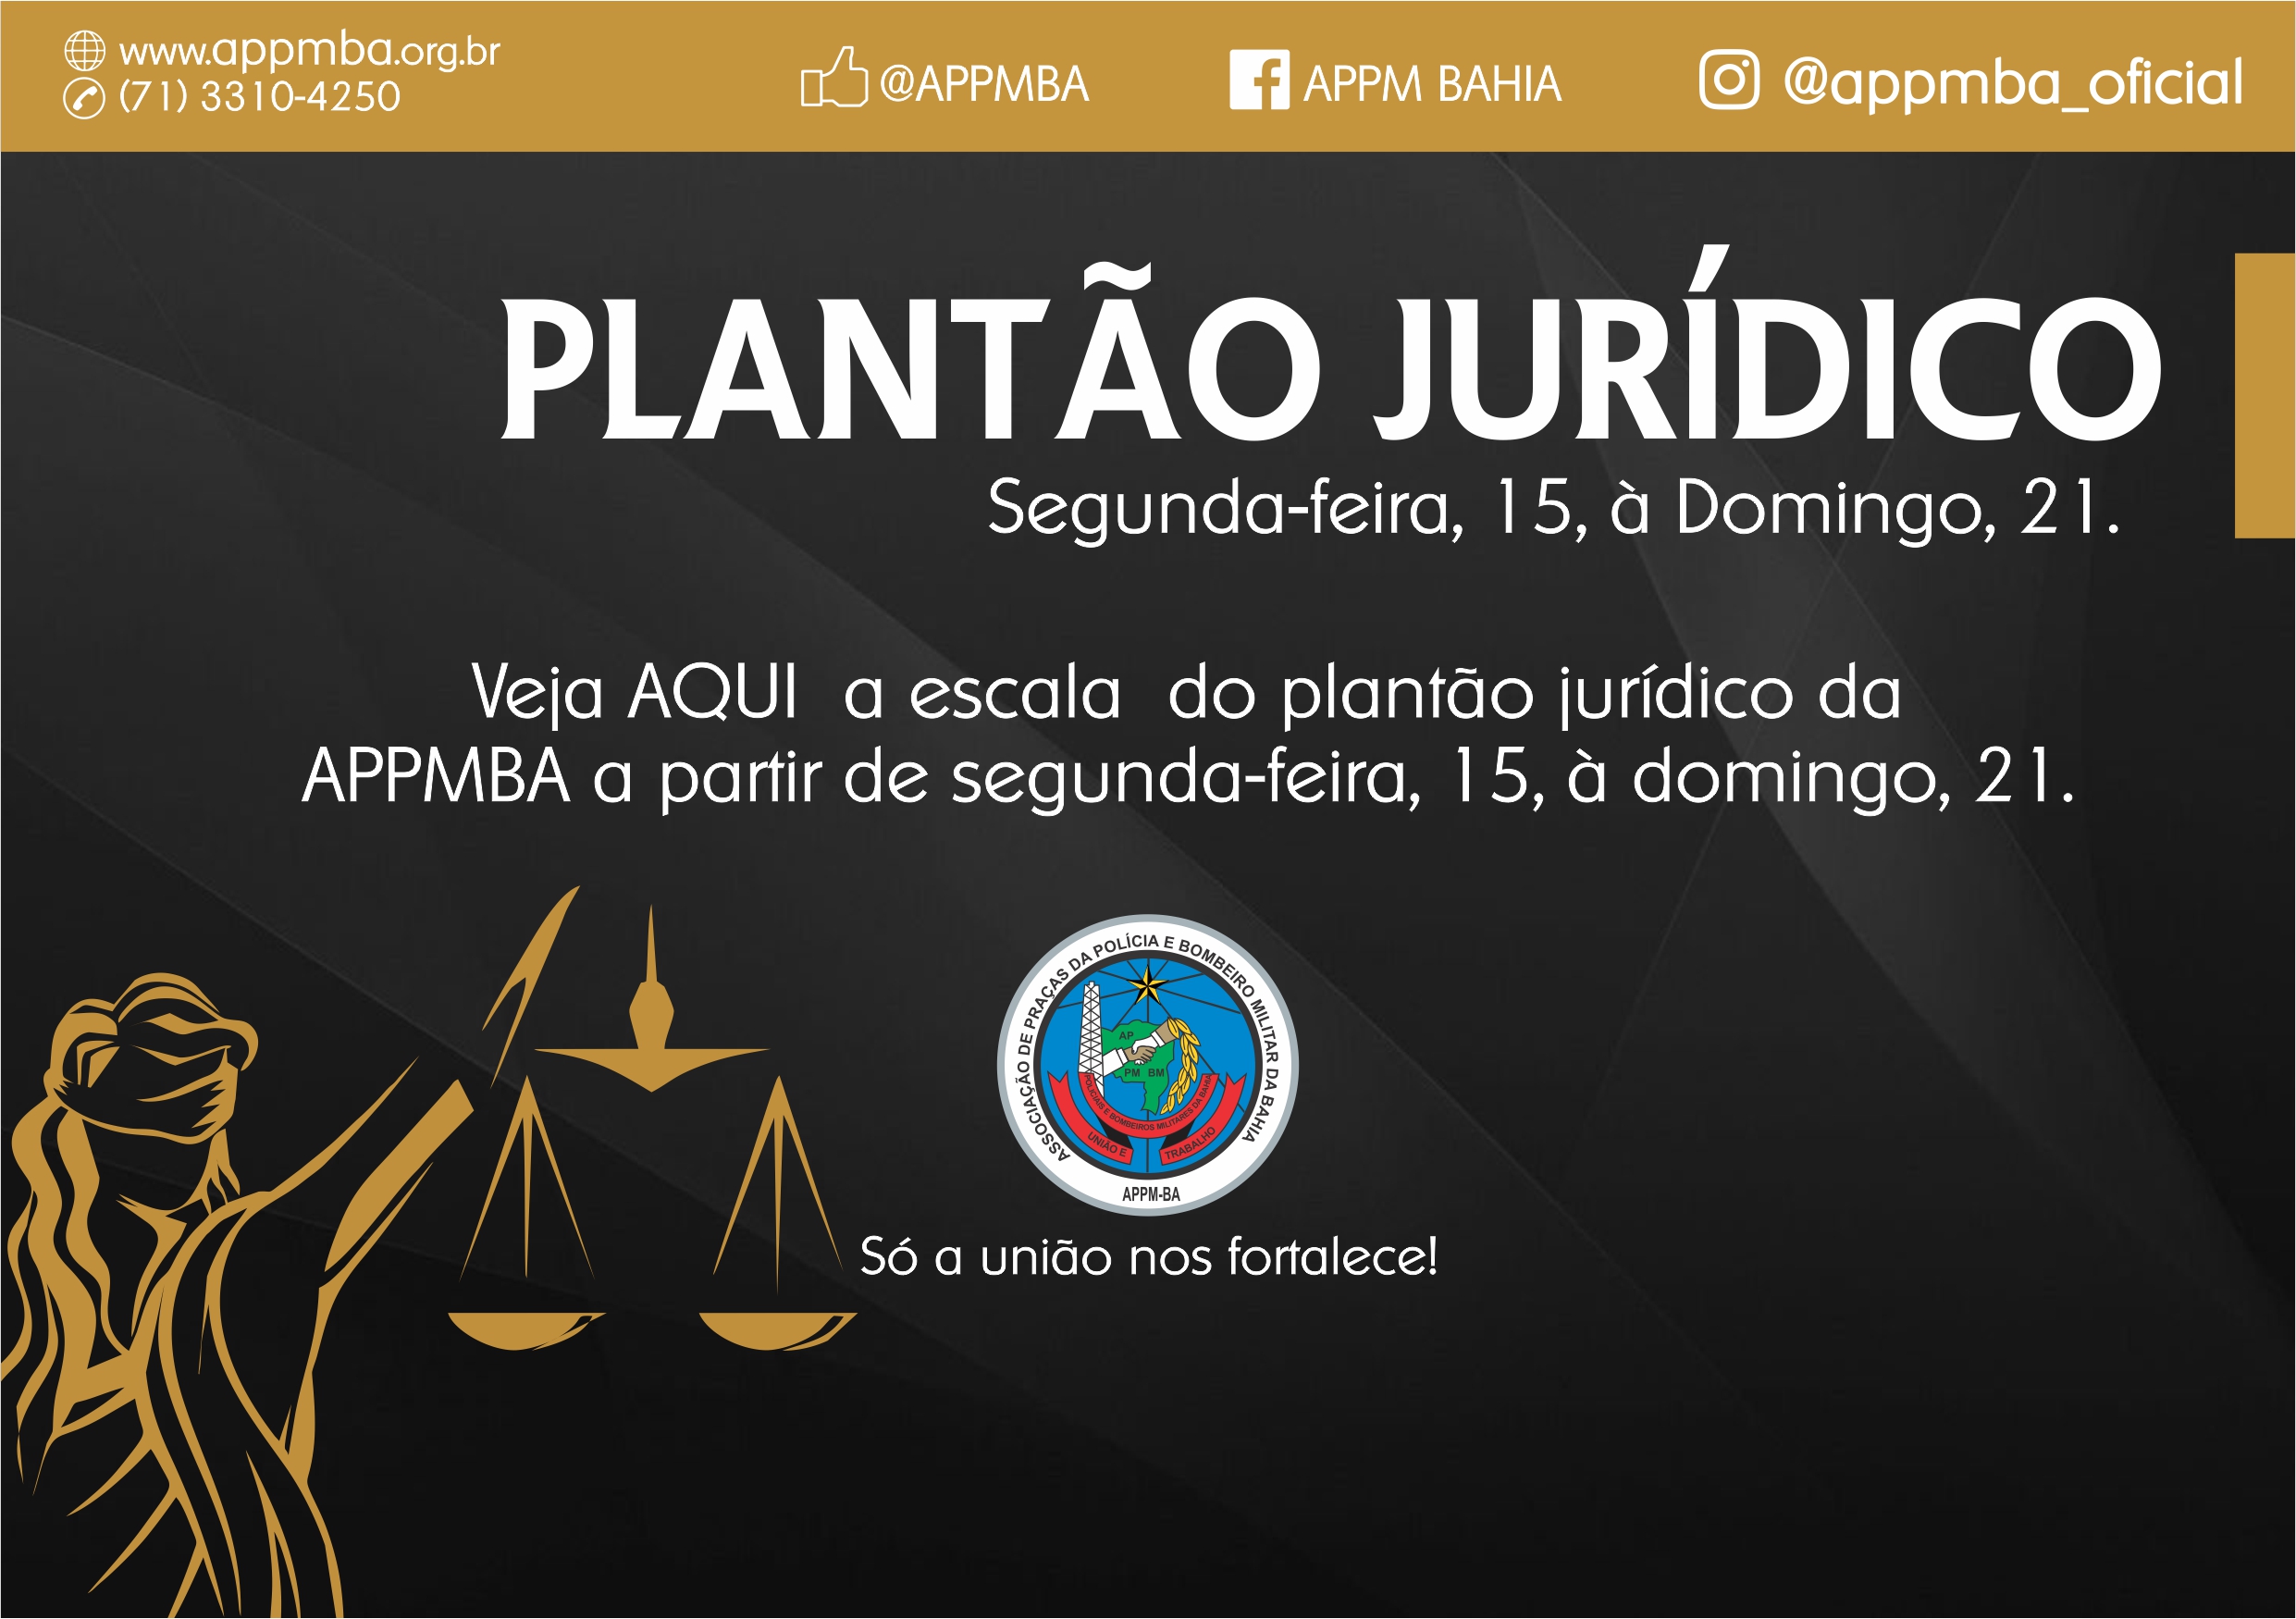 Plantão Jurídico APPM-BA, dias 15 à 21/7/2019